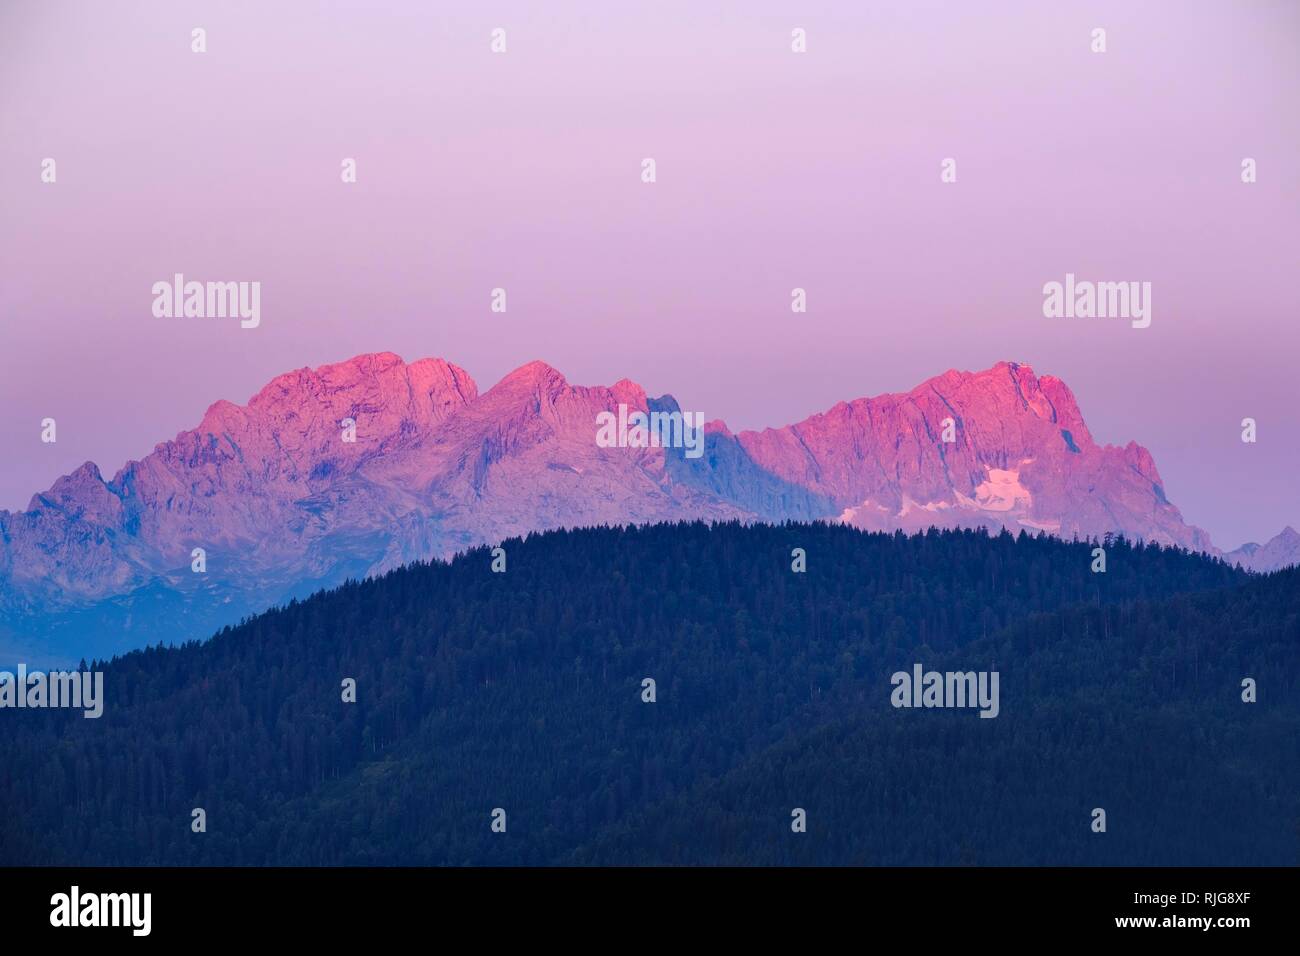 Wettersteingebirge mit rot glühenden Zugspitze bei Sonnenaufgang, Ansicht von Krepelschrofen in der Nähe von Wallgau, Werdenfelser Land, Oberbayern Stockfoto